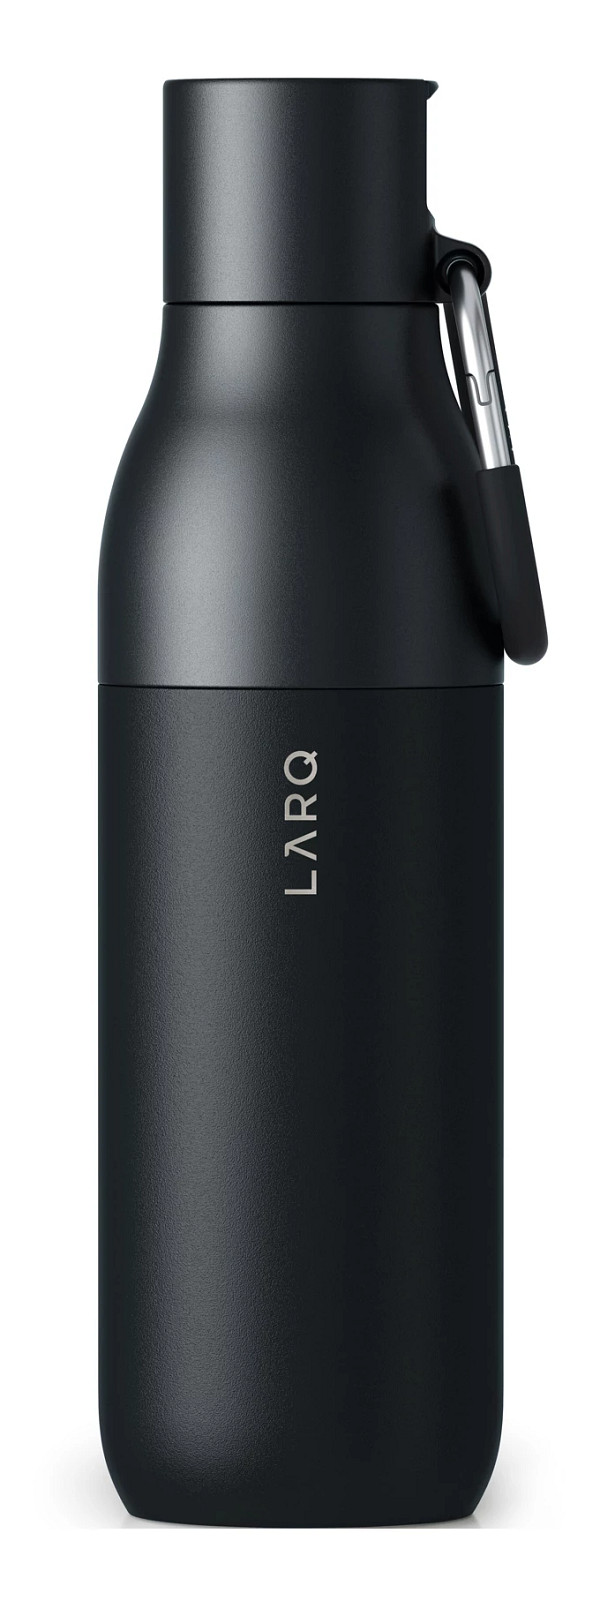 LARQ Bottle Filtered